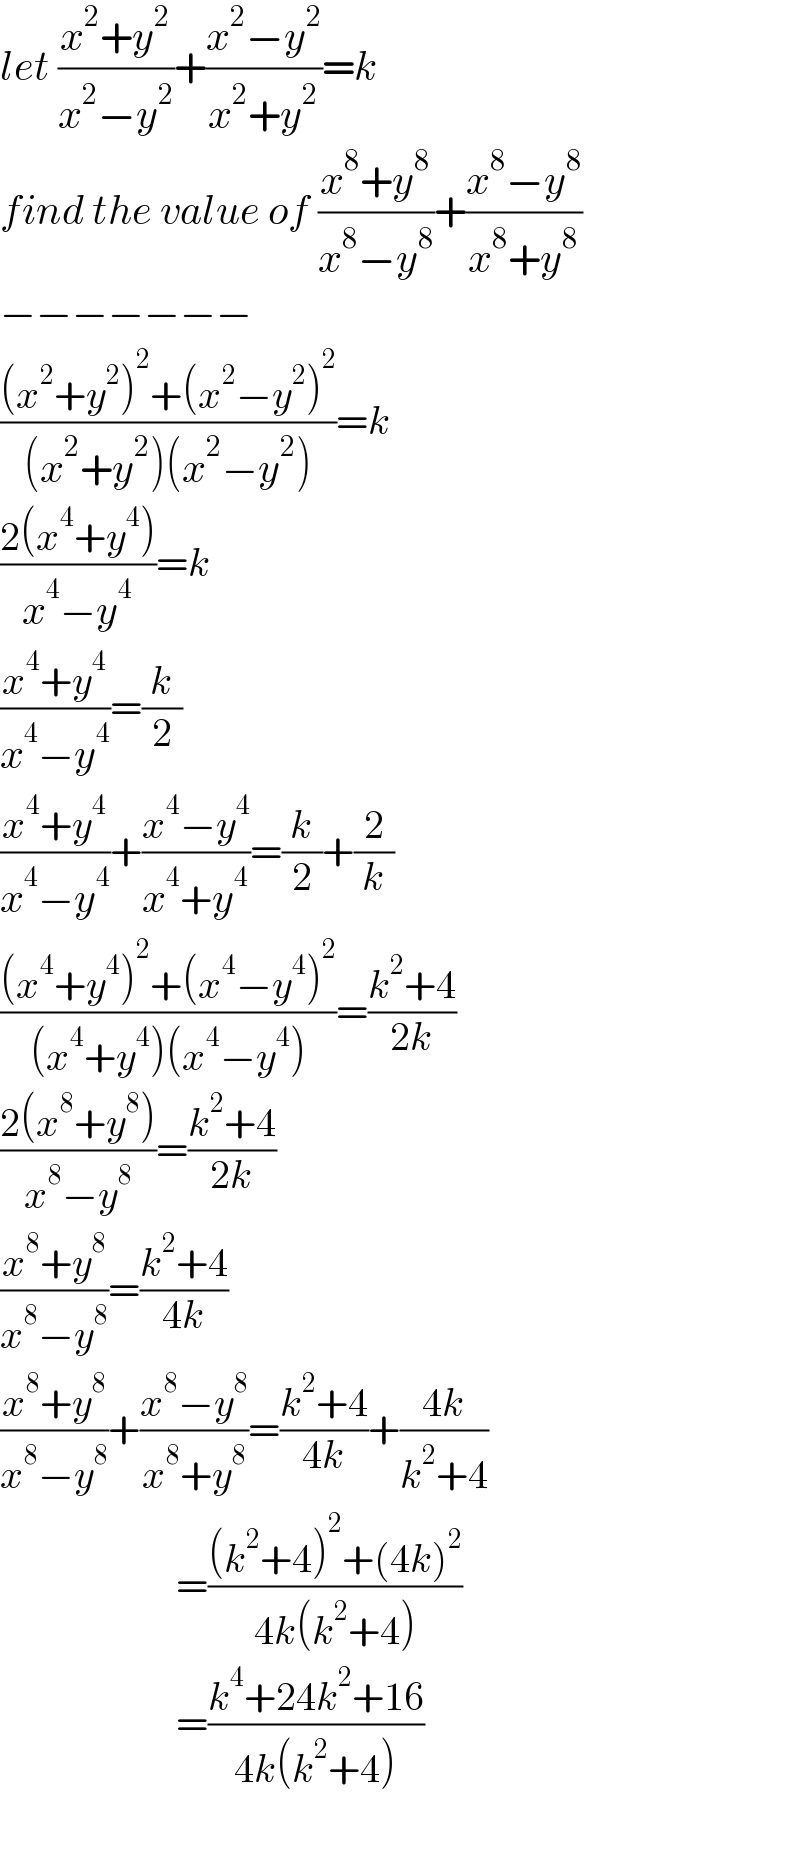 let ((x^2 +y^2 )/(x^2 −y^2 ))+((x^2 −y^2 )/(x^2 +y^2 ))=k  find the value of ((x^8 +y^8 )/(x^8 −y^8 ))+((x^8 −y^8 )/(x^8 +y^8 ))  −−−−−−−  (((x^2 +y^2 )^2 +(x^2 −y^2 )^2 )/((x^2 +y^2 )(x^2 −y^2 )))=k  ((2(x^4 +y^4 ))/(x^4 −y^4 ))=k  ((x^4 +y^4 )/(x^4 −y^4 ))=(k/2)  ((x^4 +y^4 )/(x^4 −y^4 ))+((x^4 −y^4 )/(x^4 +y^4 ))=(k/2)+(2/k)  (((x^4 +y^4 )^2 +(x^4 −y^4 )^2 )/((x^4 +y^4 )(x^4 −y^4 )))=((k^2 +4)/(2k))  ((2(x^8 +y^8 ))/(x^8 −y^8 ))=((k^2 +4)/(2k))  ((x^8 +y^8 )/(x^8 −y^8 ))=((k^2 +4)/(4k))  ((x^8 +y^8 )/(x^8 −y^8 ))+((x^8 −y^8 )/(x^8 +y^8 ))=((k^2 +4)/(4k))+((4k)/(k^2 +4))                        =(((k^2 +4)^2 +(4k)^2 )/(4k(k^2 +4)))                        =((k^4 +24k^2 +16)/(4k(k^2 +4)))    